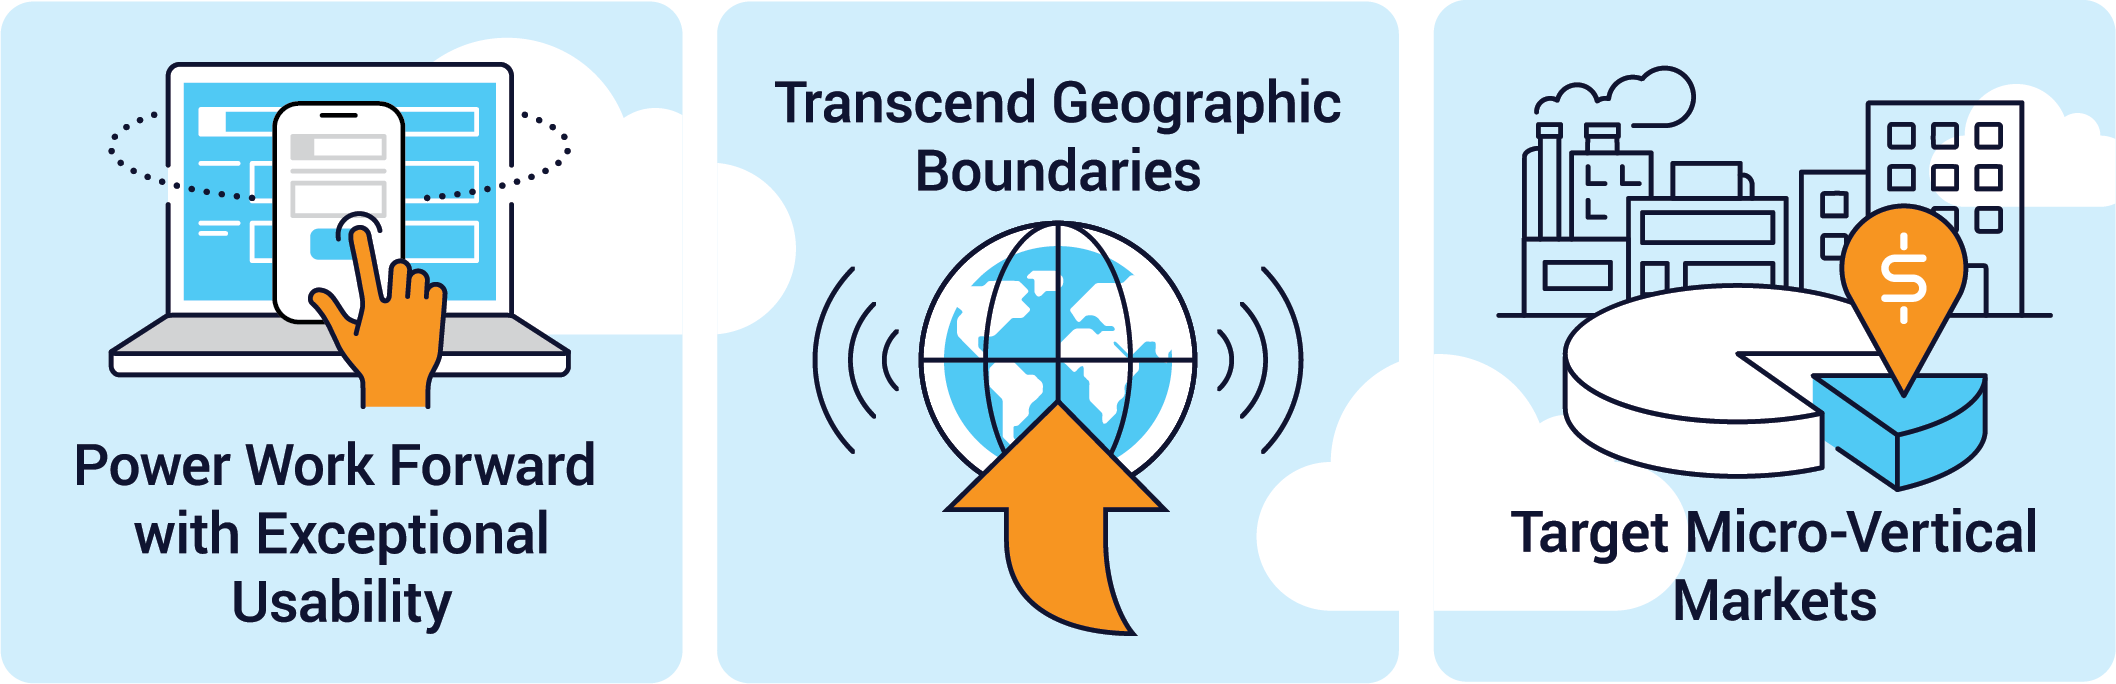 Acumatica 2022 R2: Transcend Geographic Boundaries